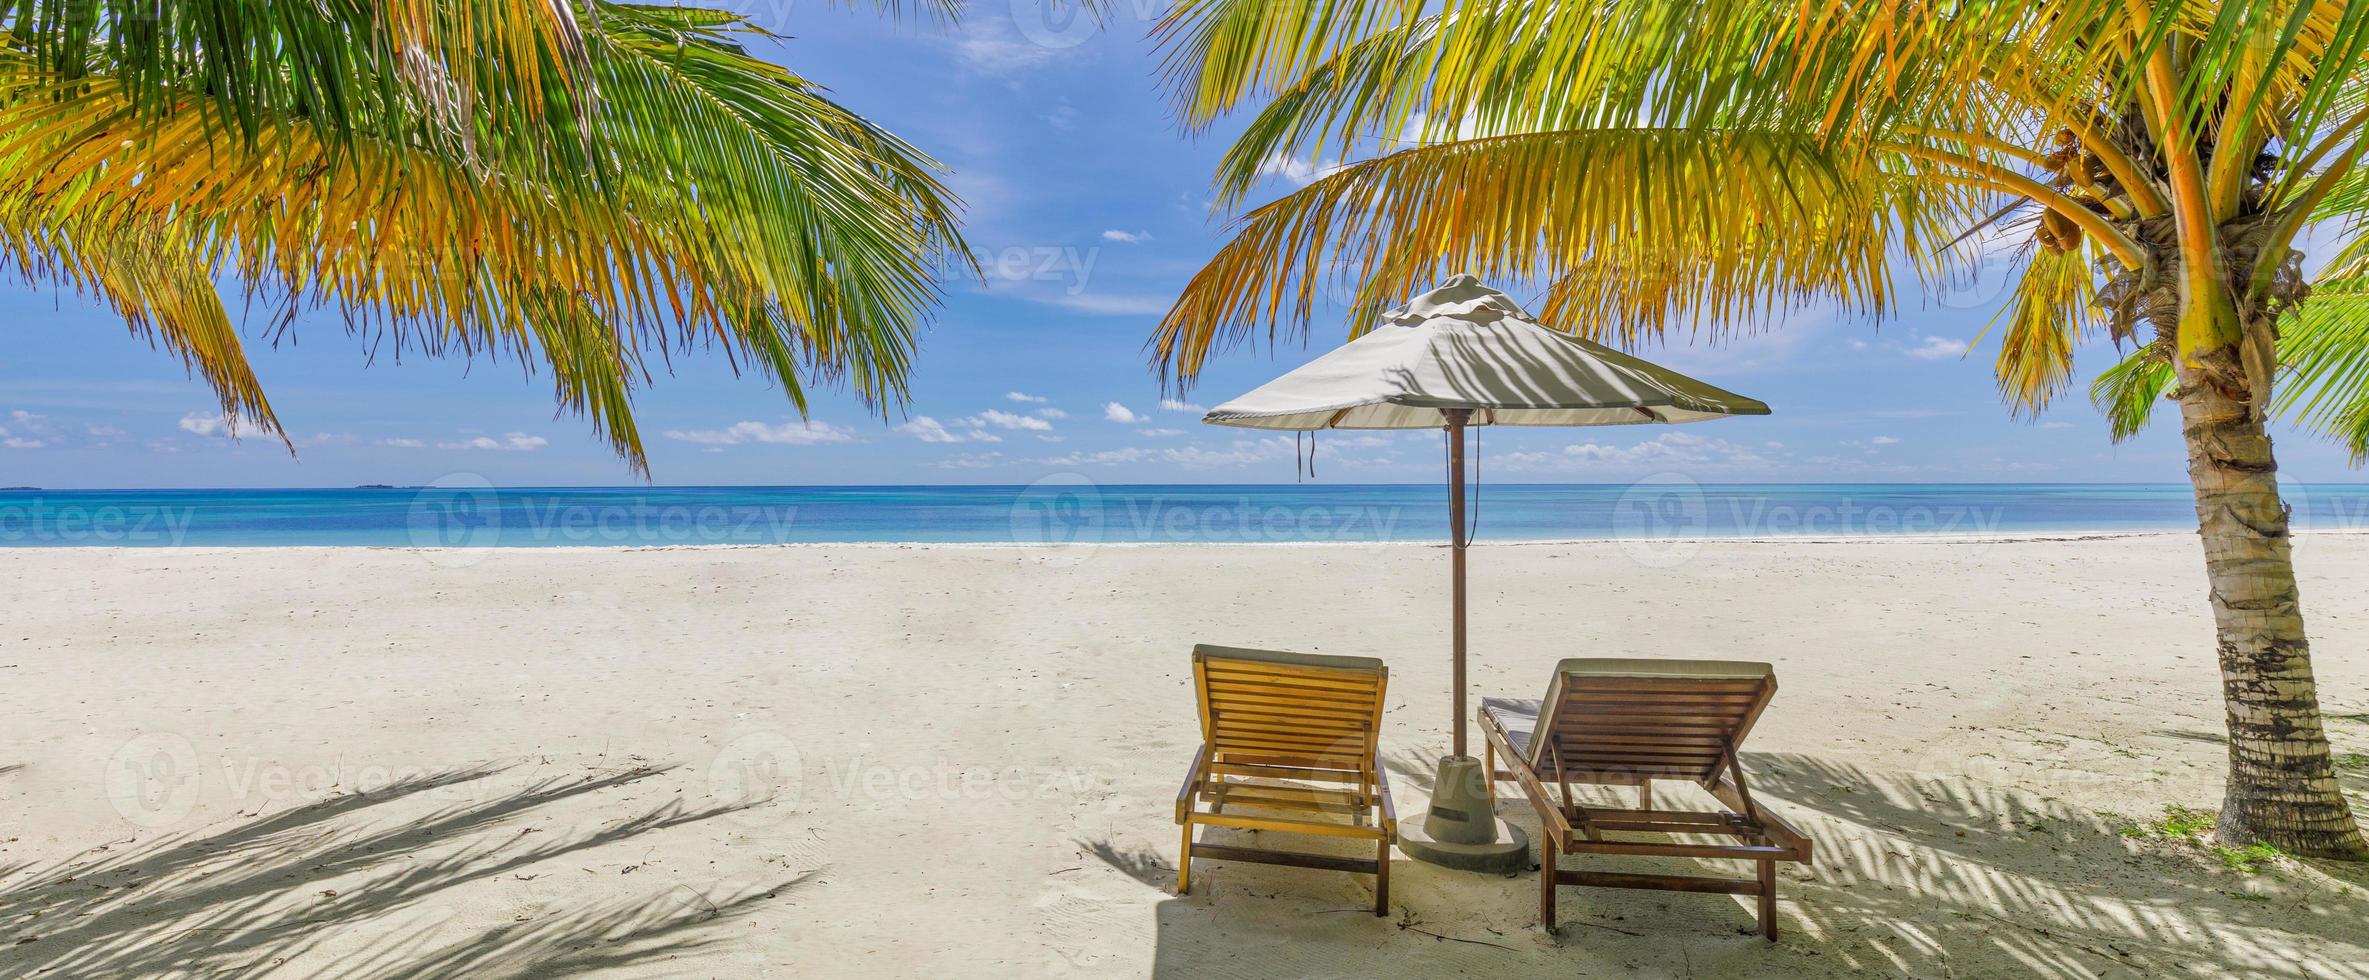 increíble playa de vacaciones. un par de sillas juntas junto a la pancarta del mar. concepto de luna de miel de vacaciones románticas de verano. paisaje de isla tropical. panorama costero tranquilo, horizonte costero de arena relajante, hojas de palma foto